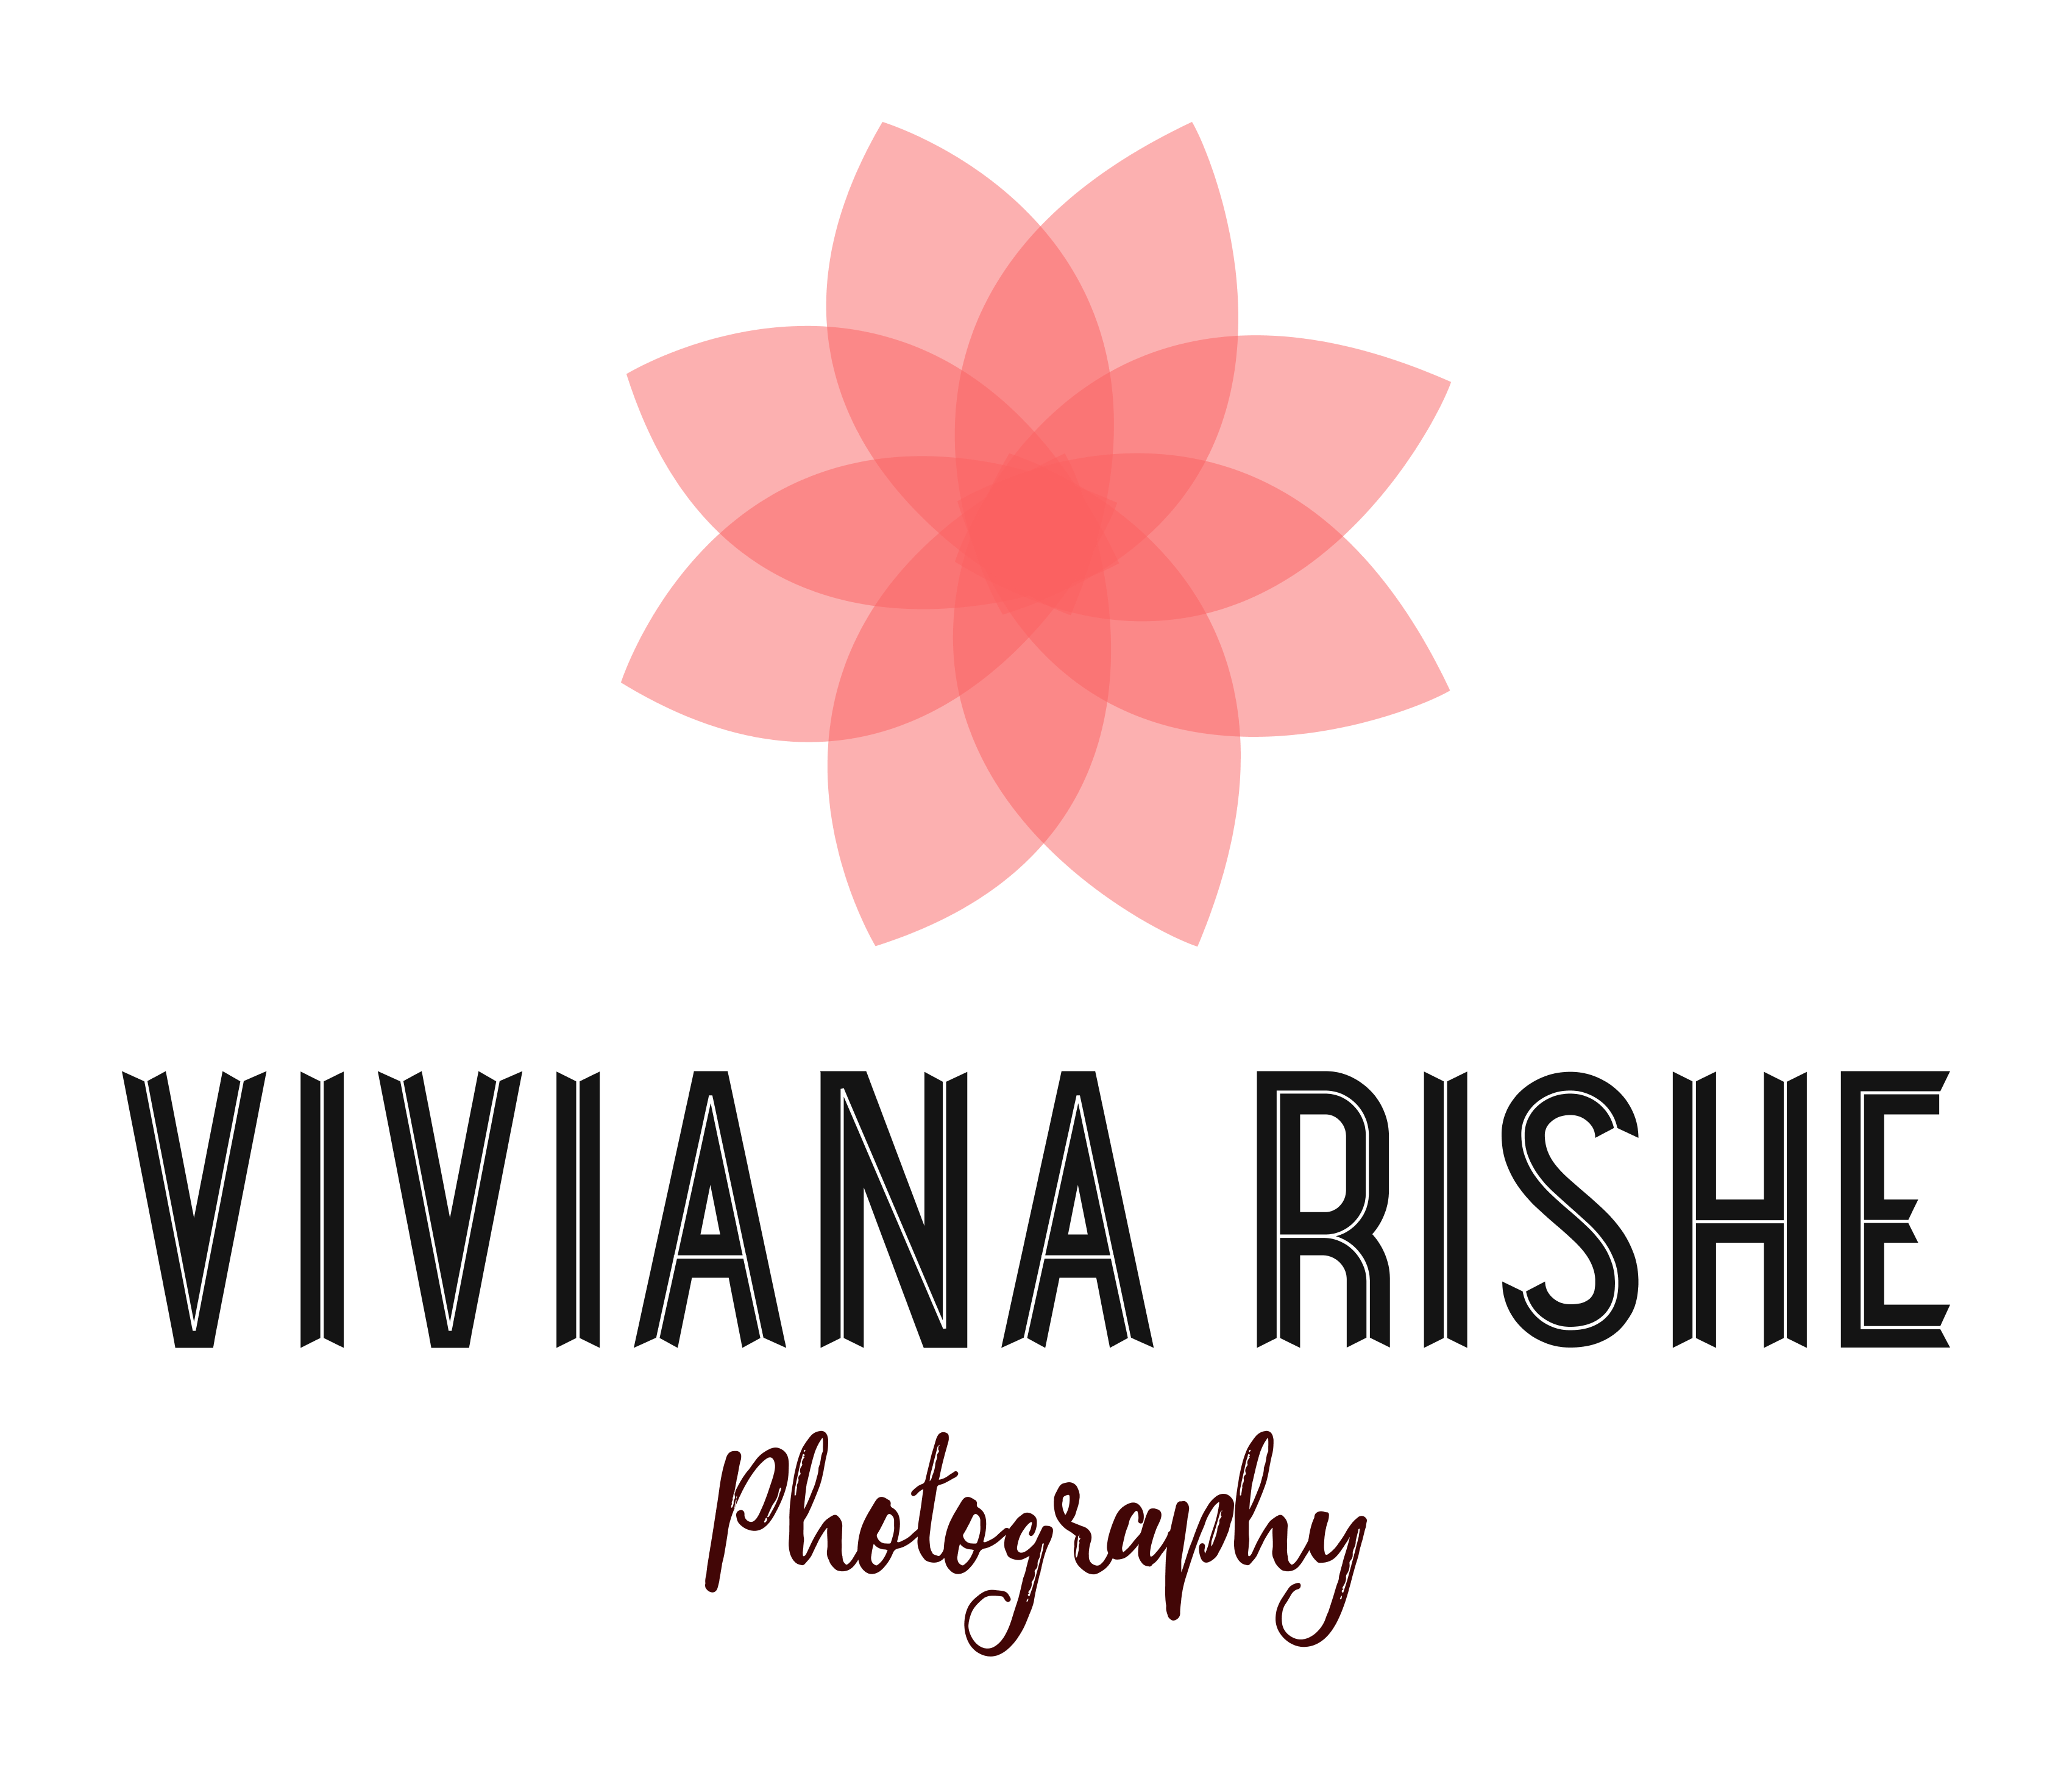 Viviana Rishe Photography